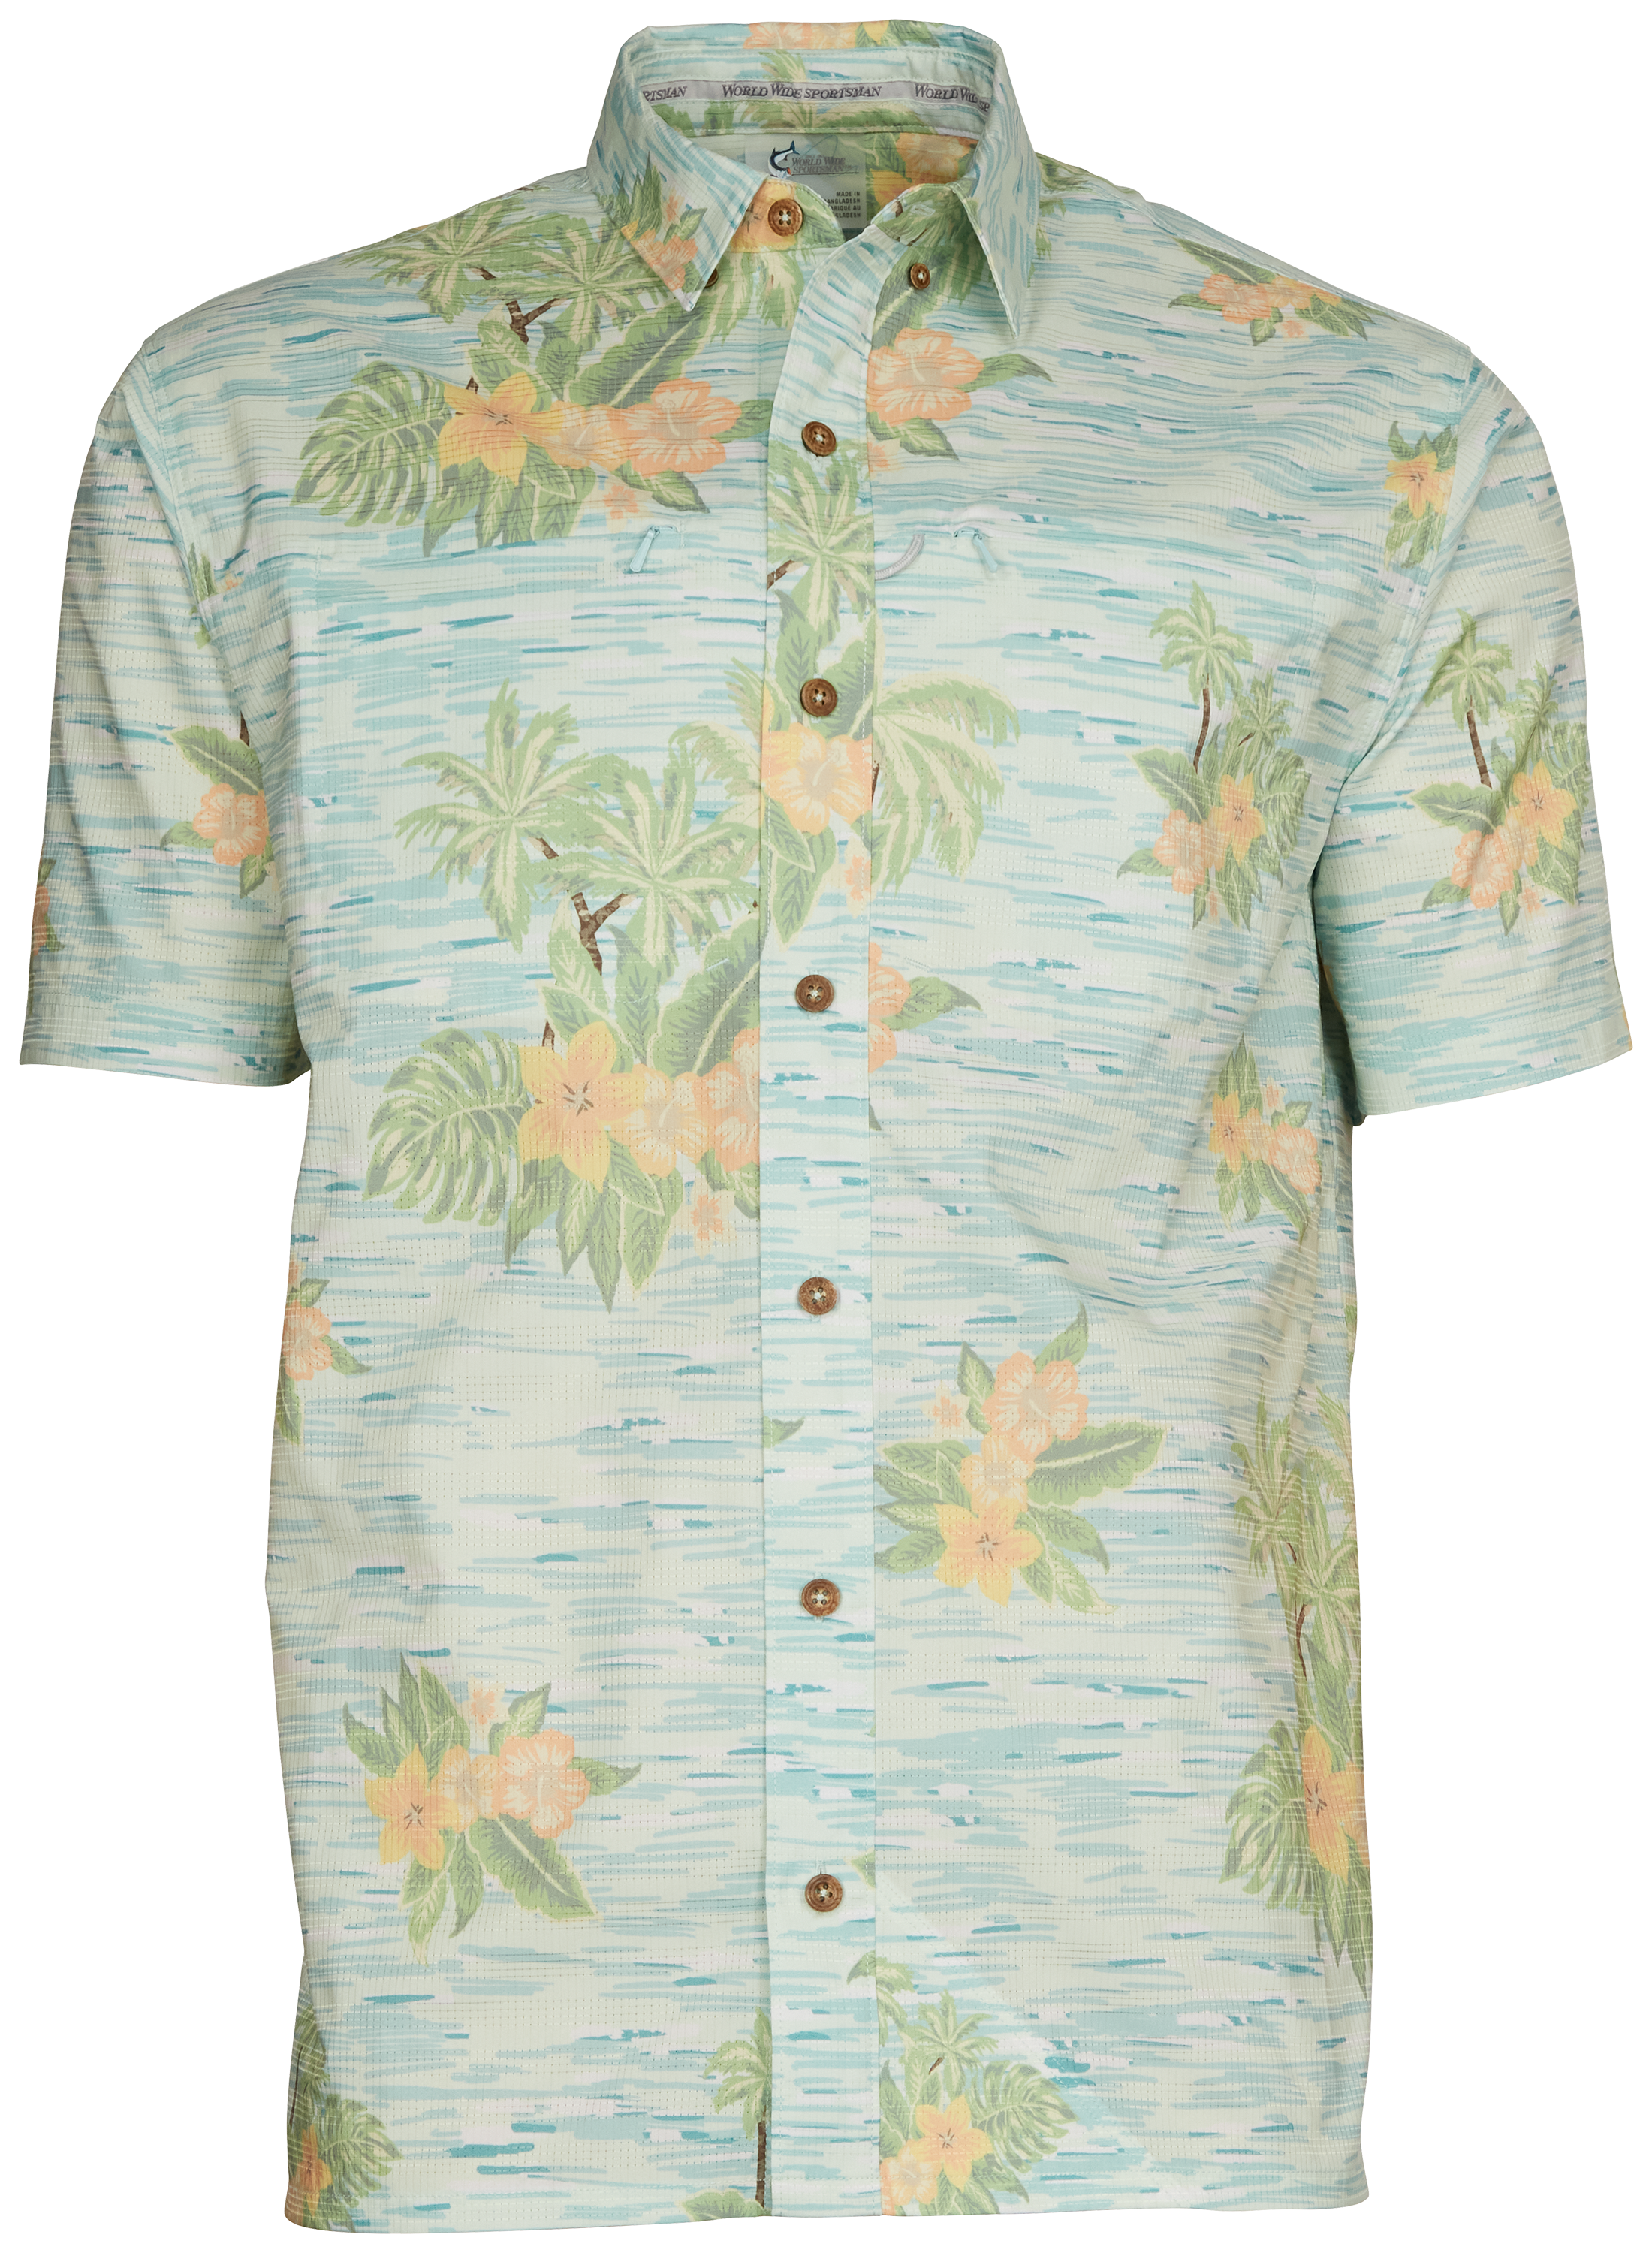 World Wide Sportsman Seacrest Print Short-Sleeve Button-Down Shirt for Men - Blue Hawaiian - XL